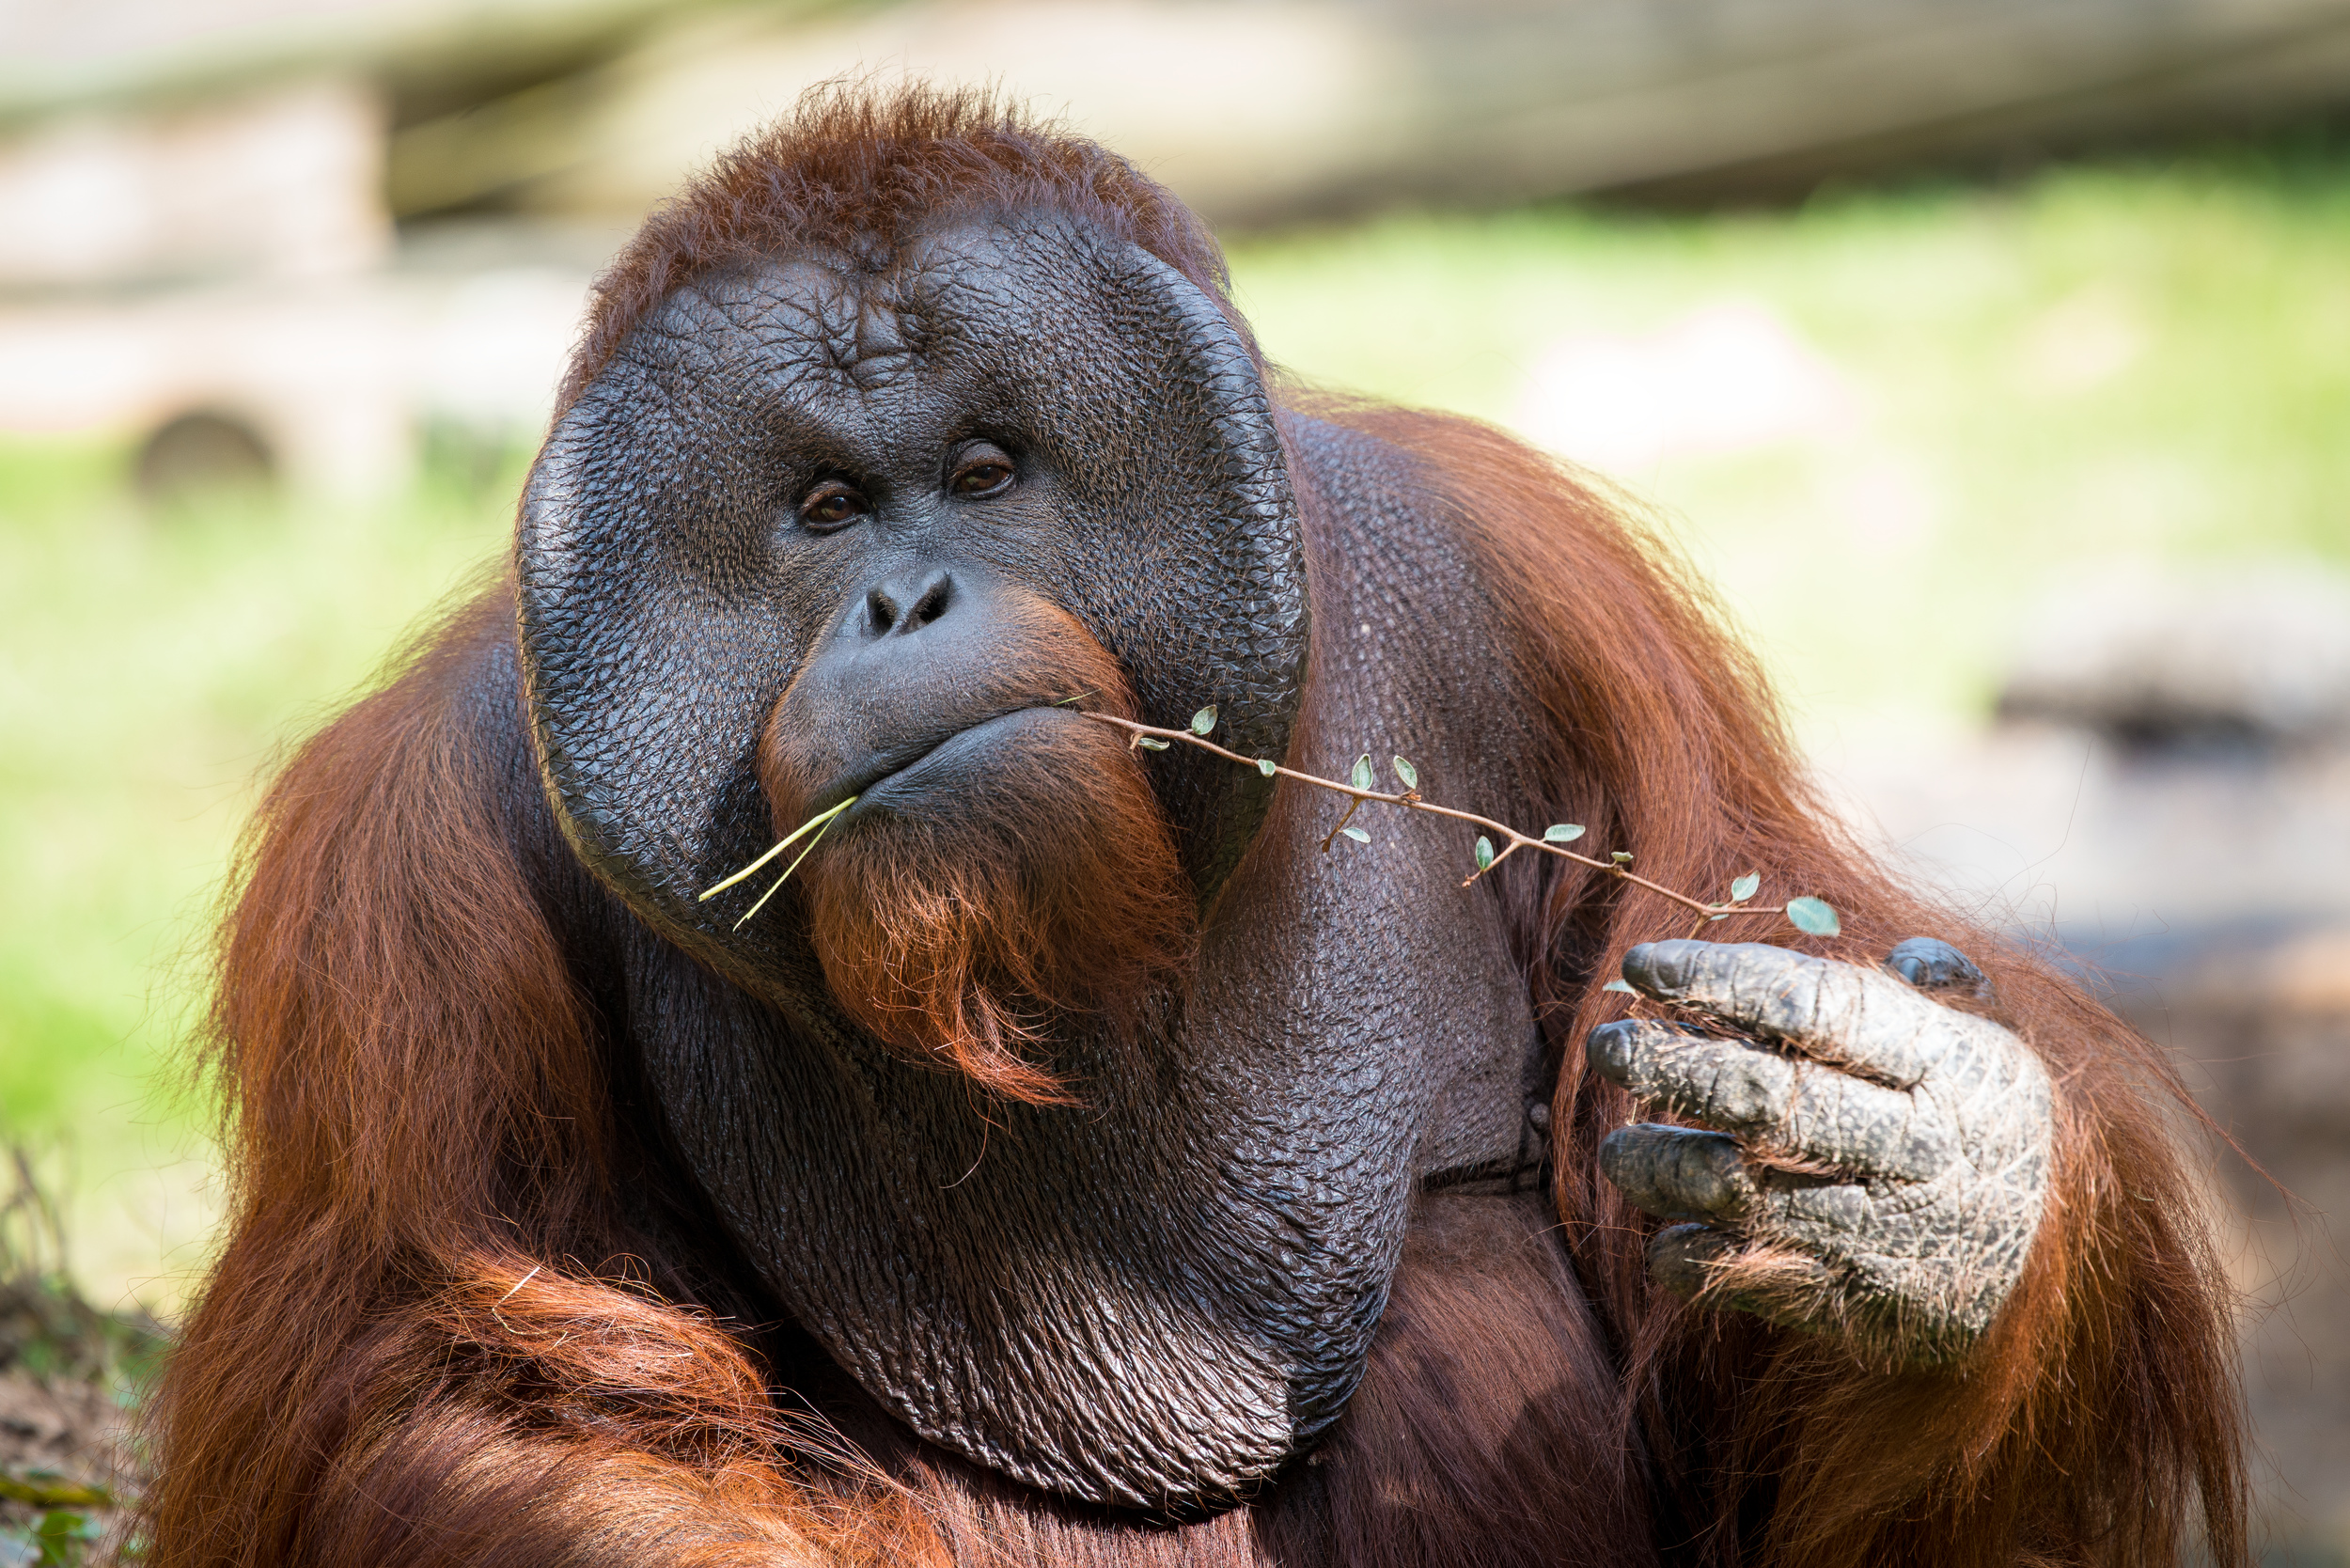 Saving Orangutans  One Bridge at a Time The Houston Zoo